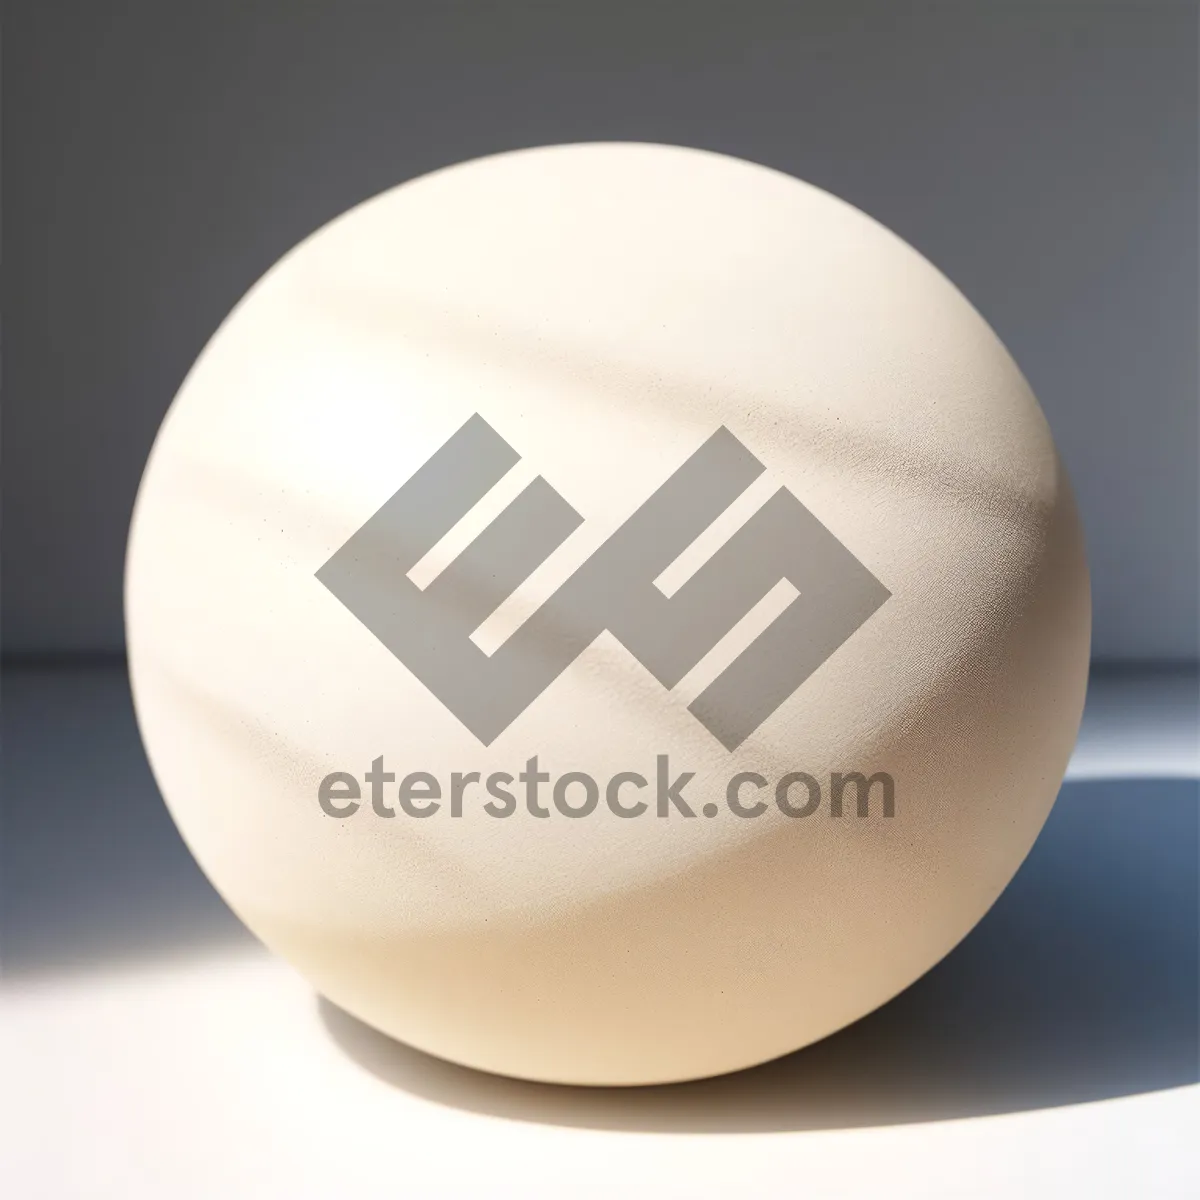 Picture of Relief-Filled Egg: Prescription Drug Food